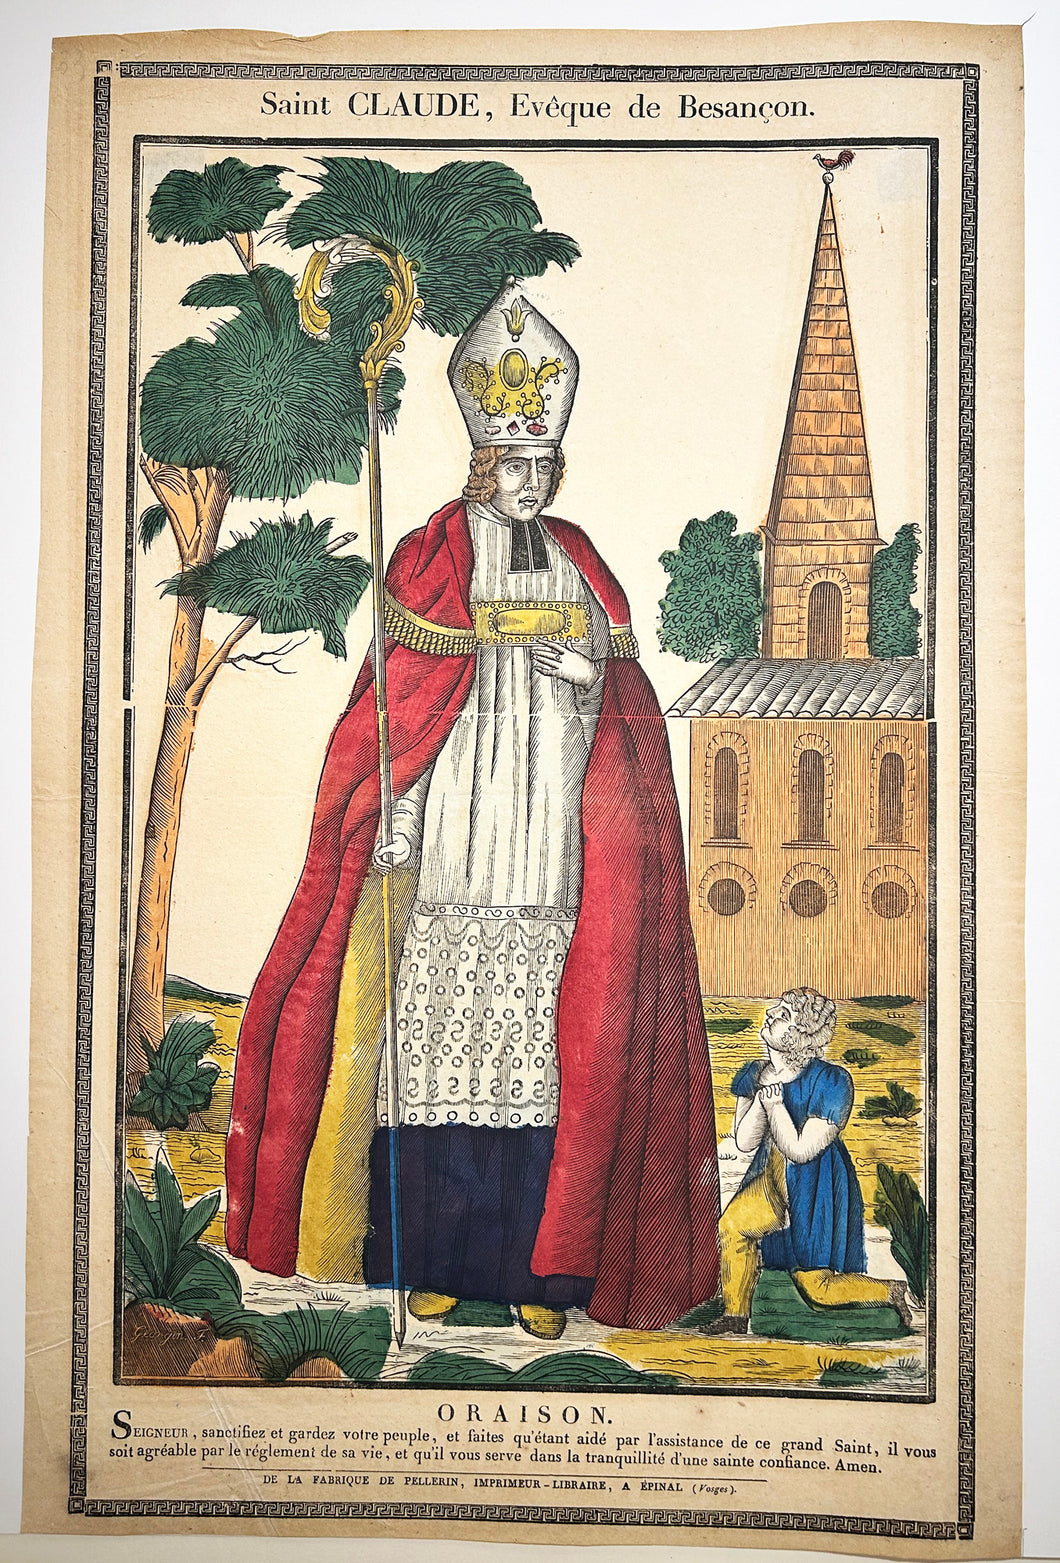 Saint Claude, Evêque de Besançon. Patron des tanneurs et selliers.